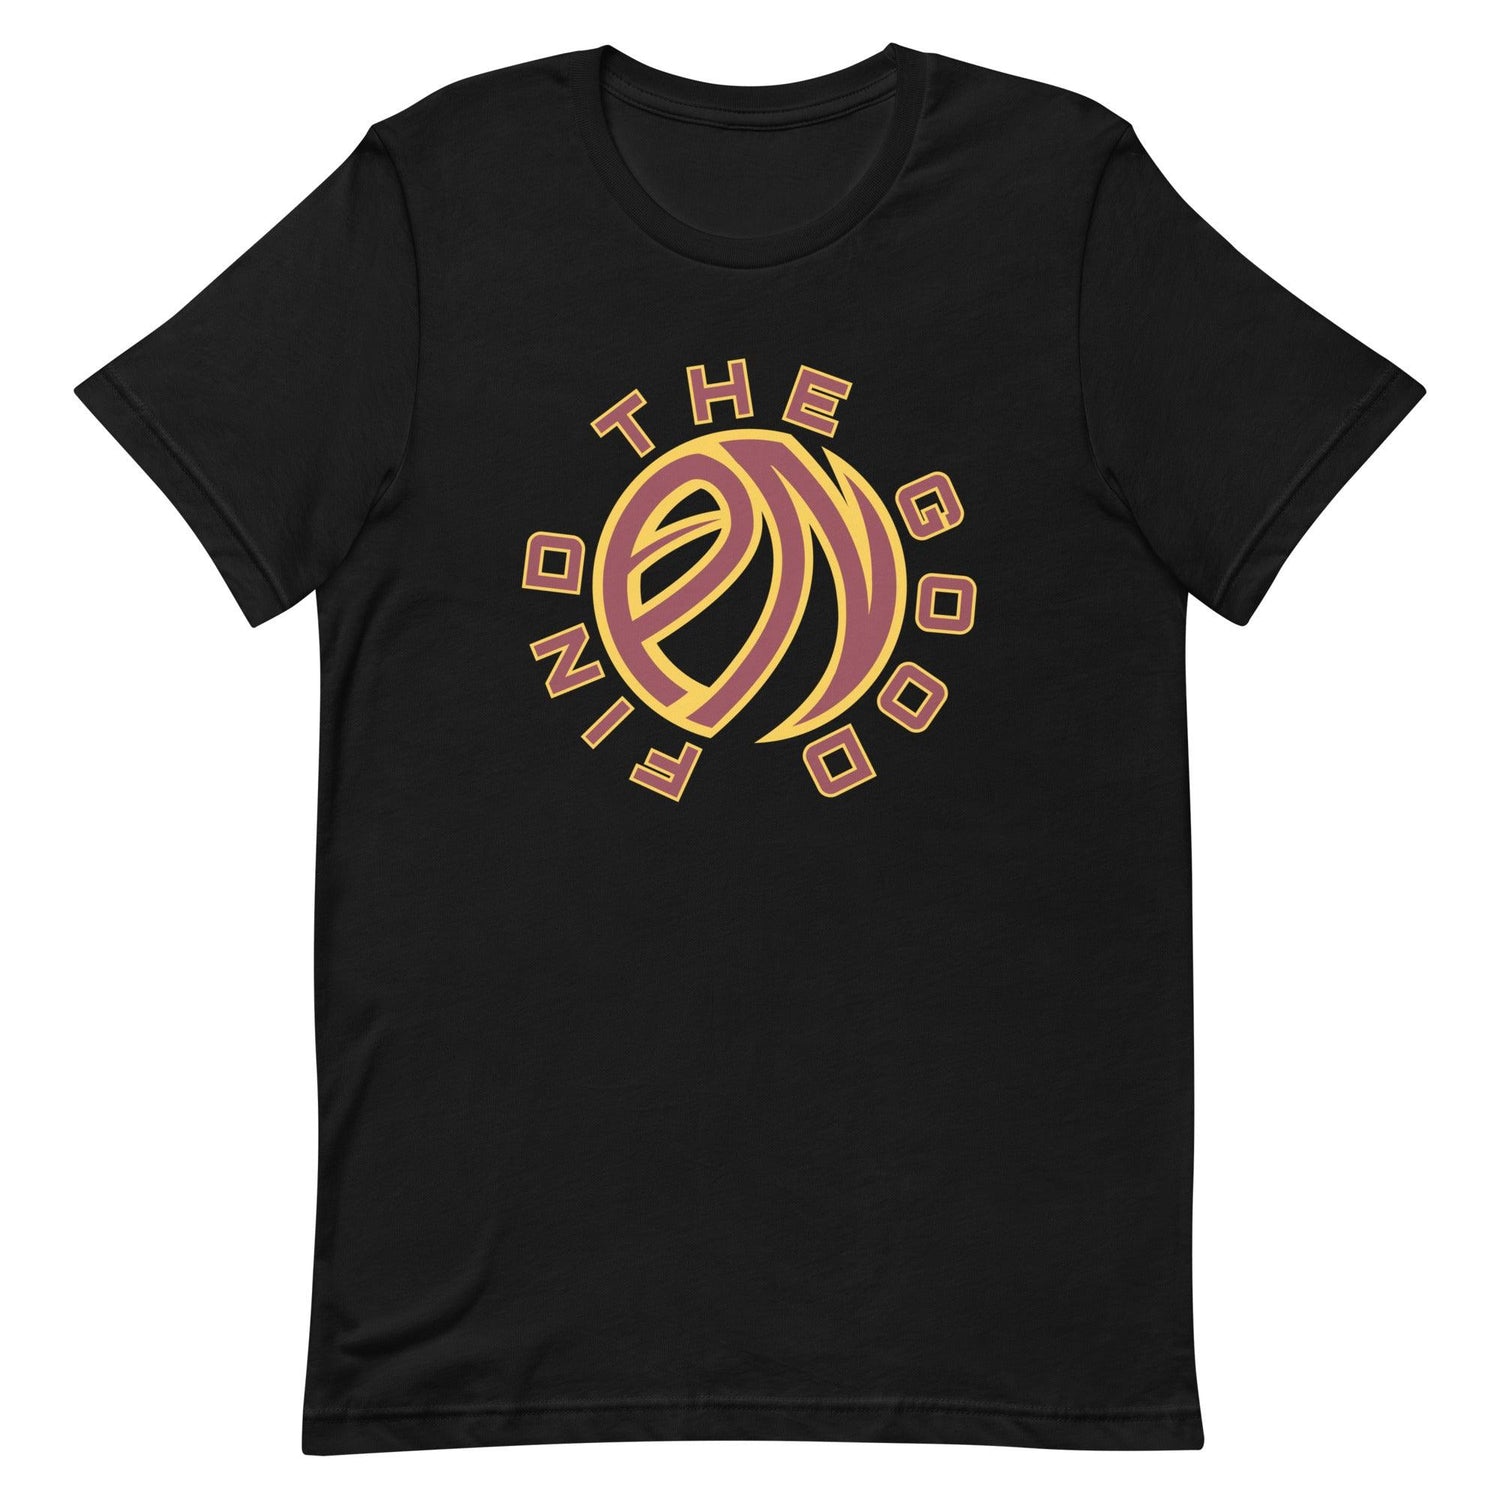 Prentiss Nixon “Find The Good” t-shirt - Fan Arch